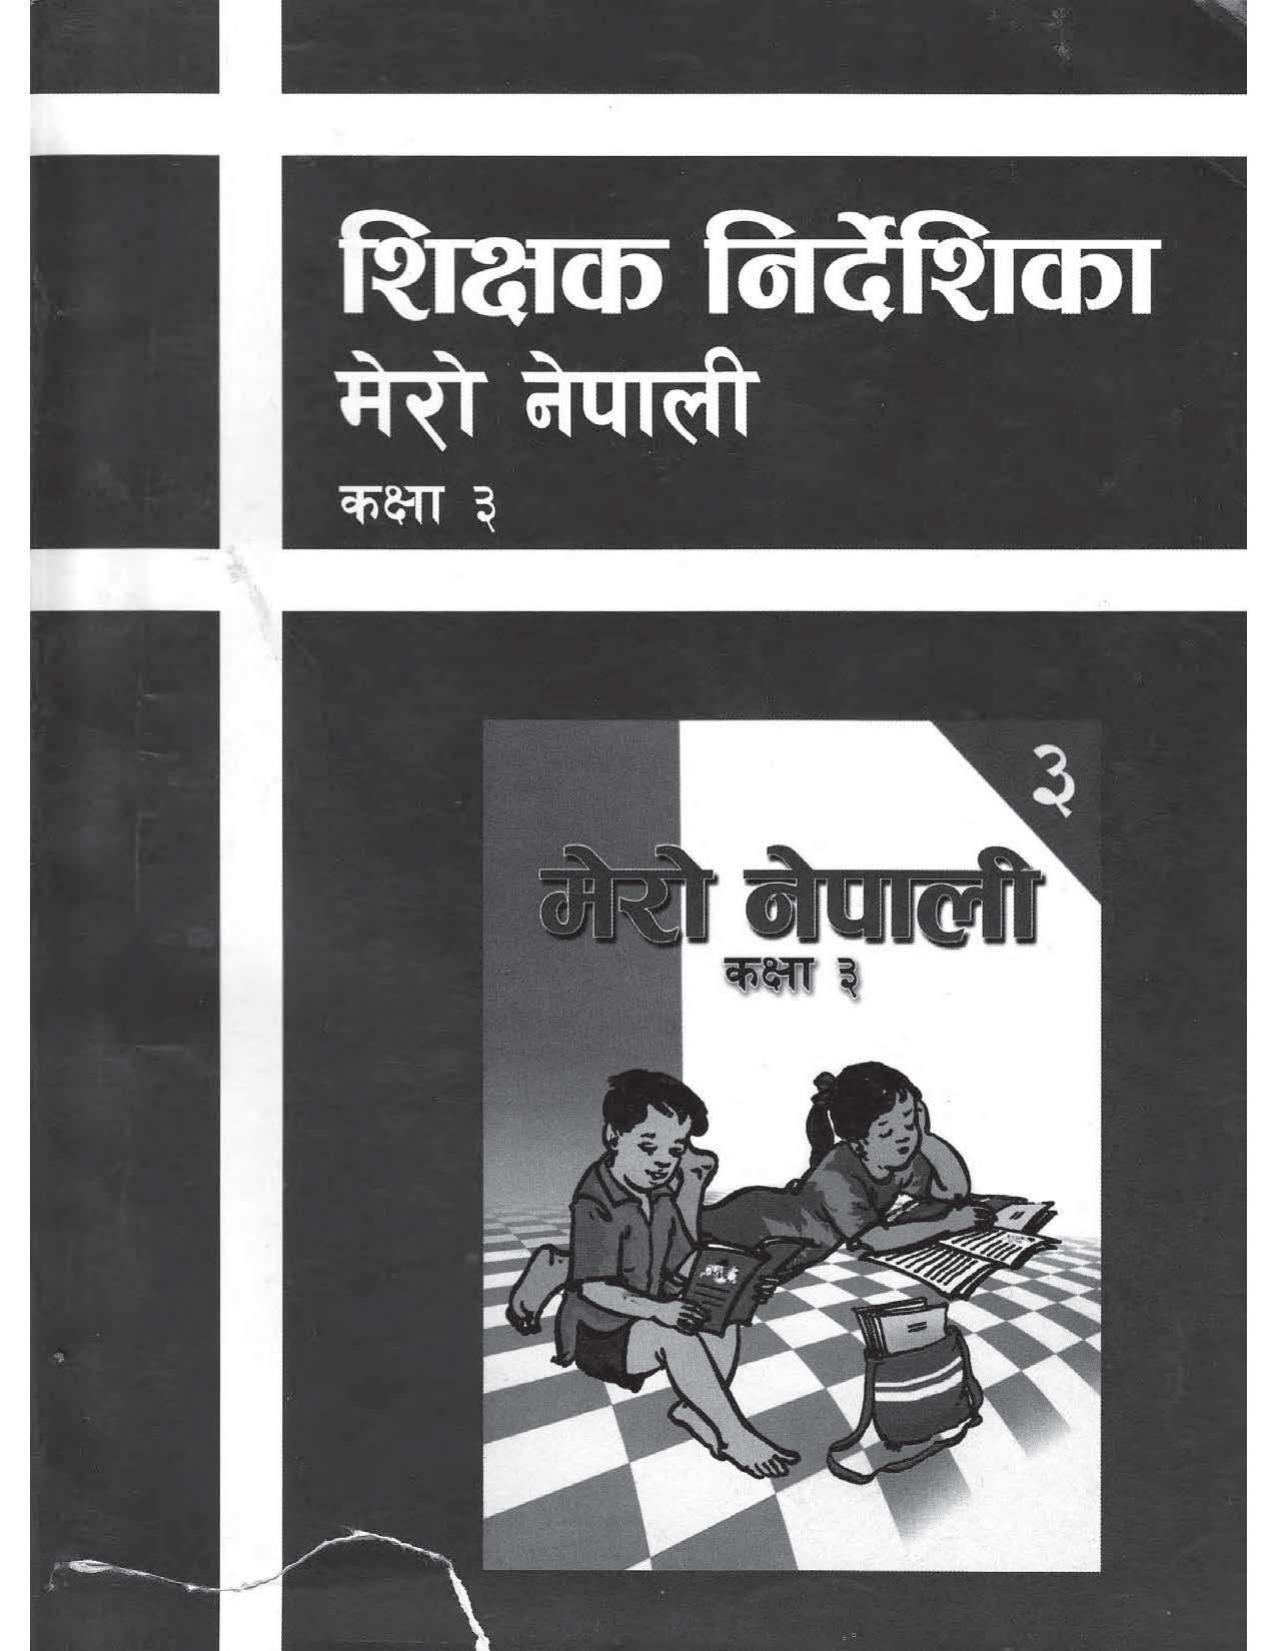 CDC 2017 - मेरो नेपाली शिक्षक निर्देशिका कक्षा ३